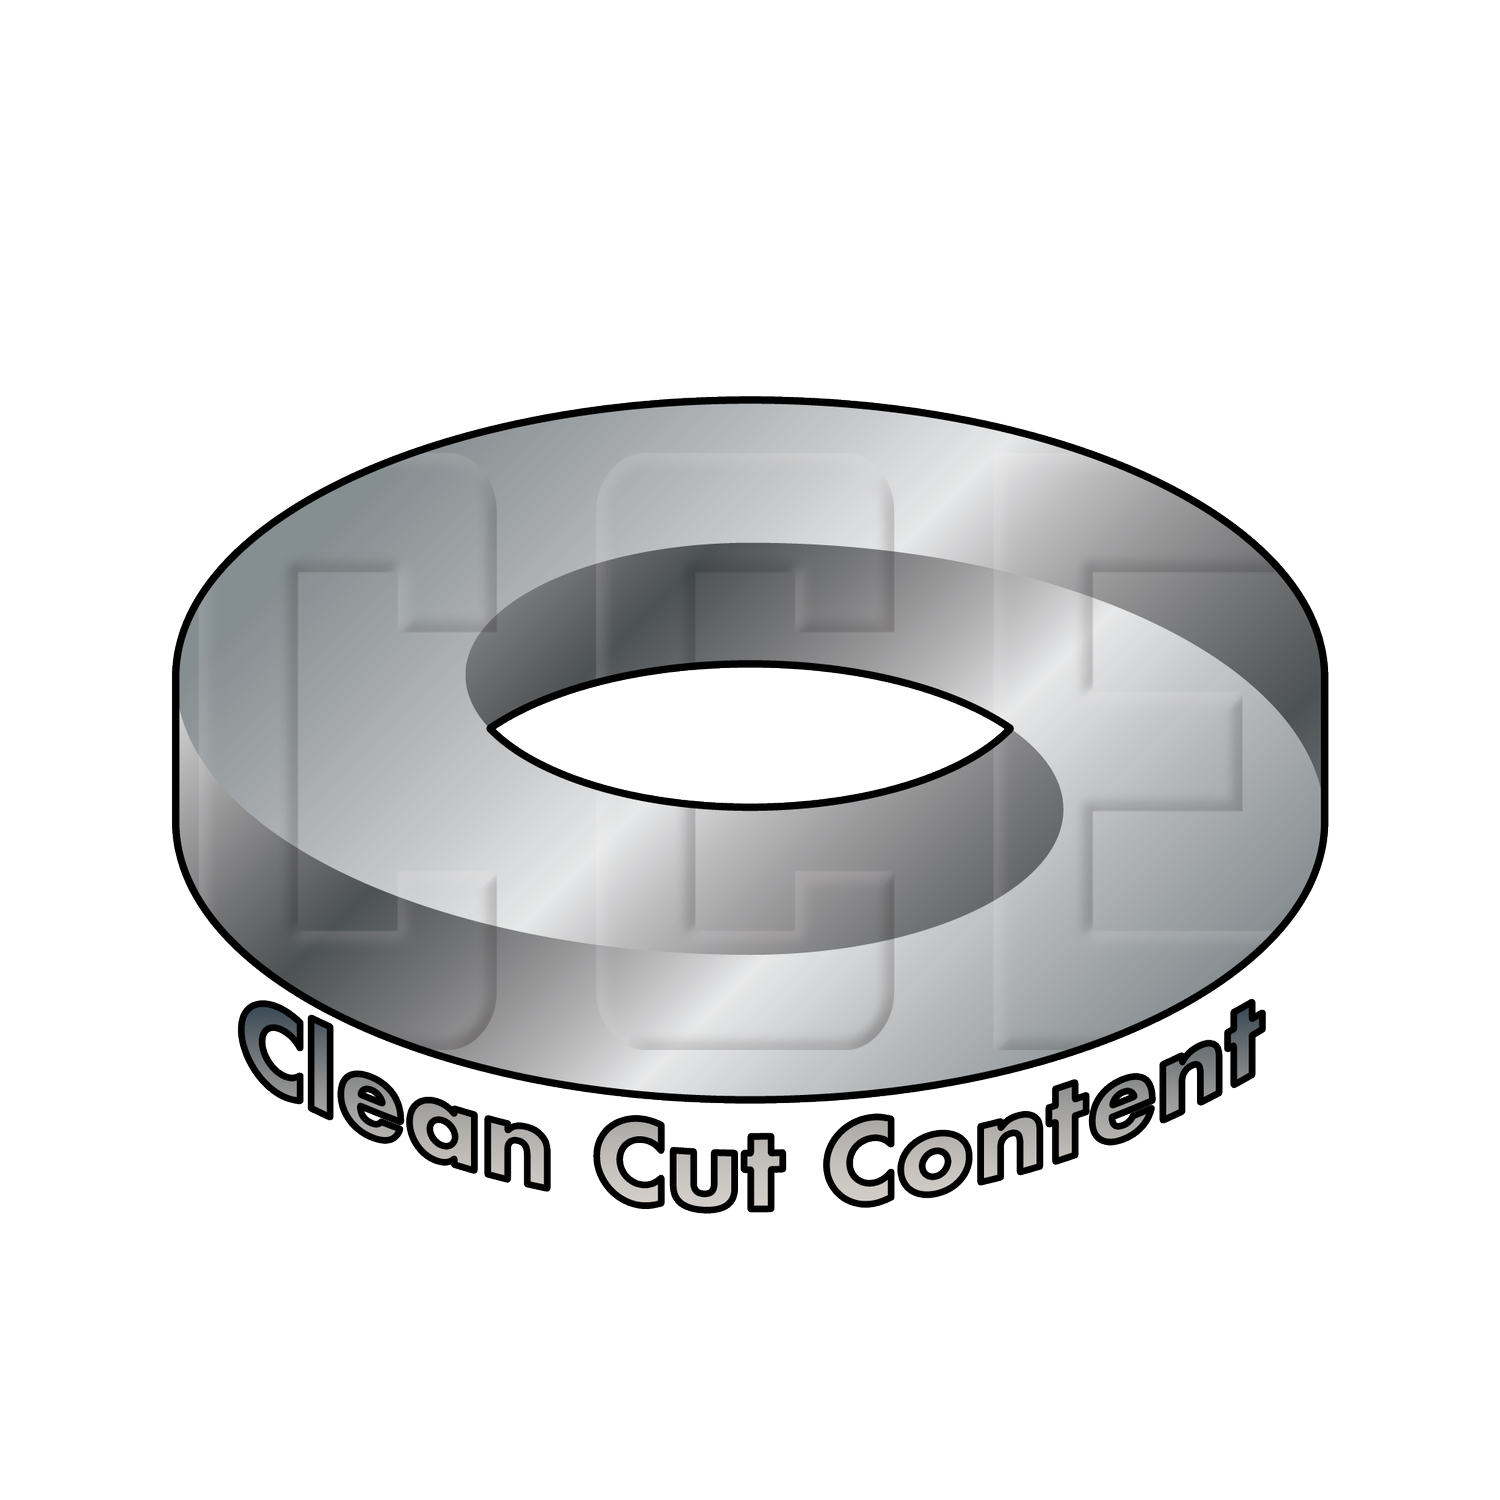 Clean Cut Entertainment